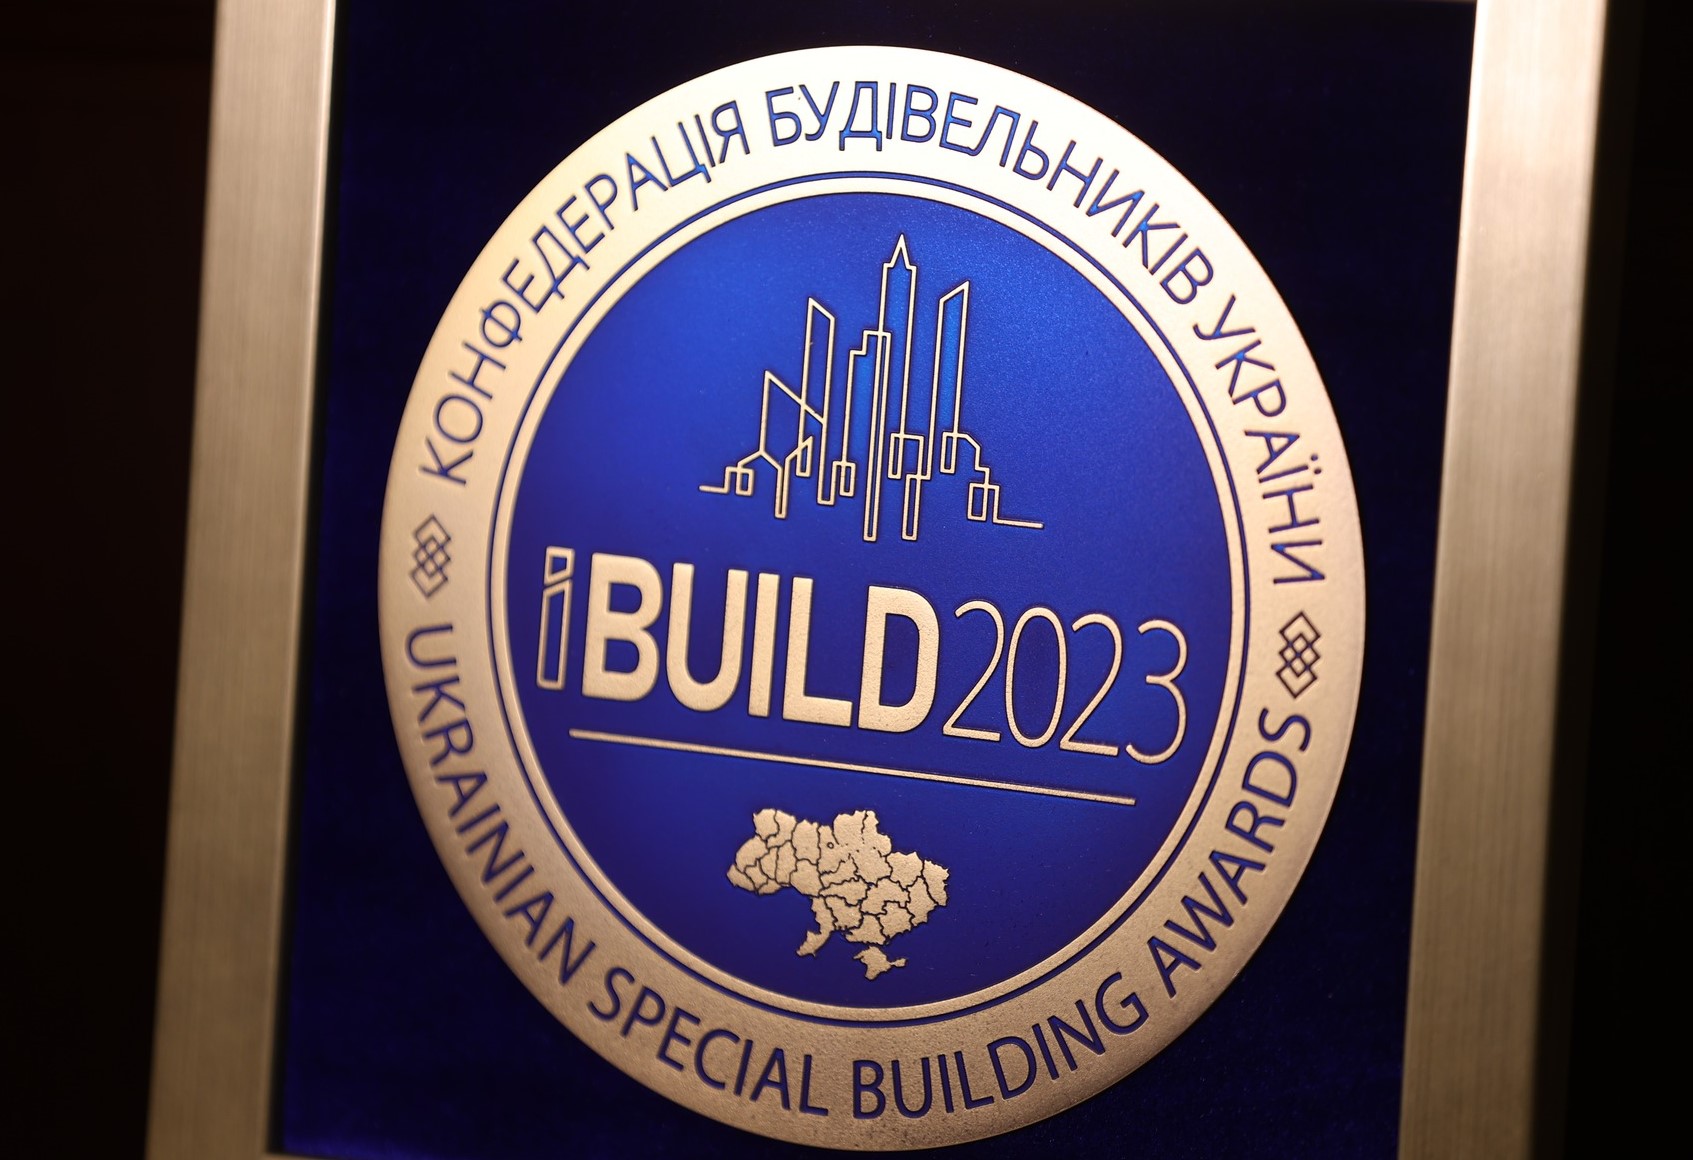 🏆11 грудня відбулась церемонія UKRAINIAN SPECIAL BUILDING AWARDS IBUILD 2023, яка цього року пройшла у спеціальному благодійному форматі.